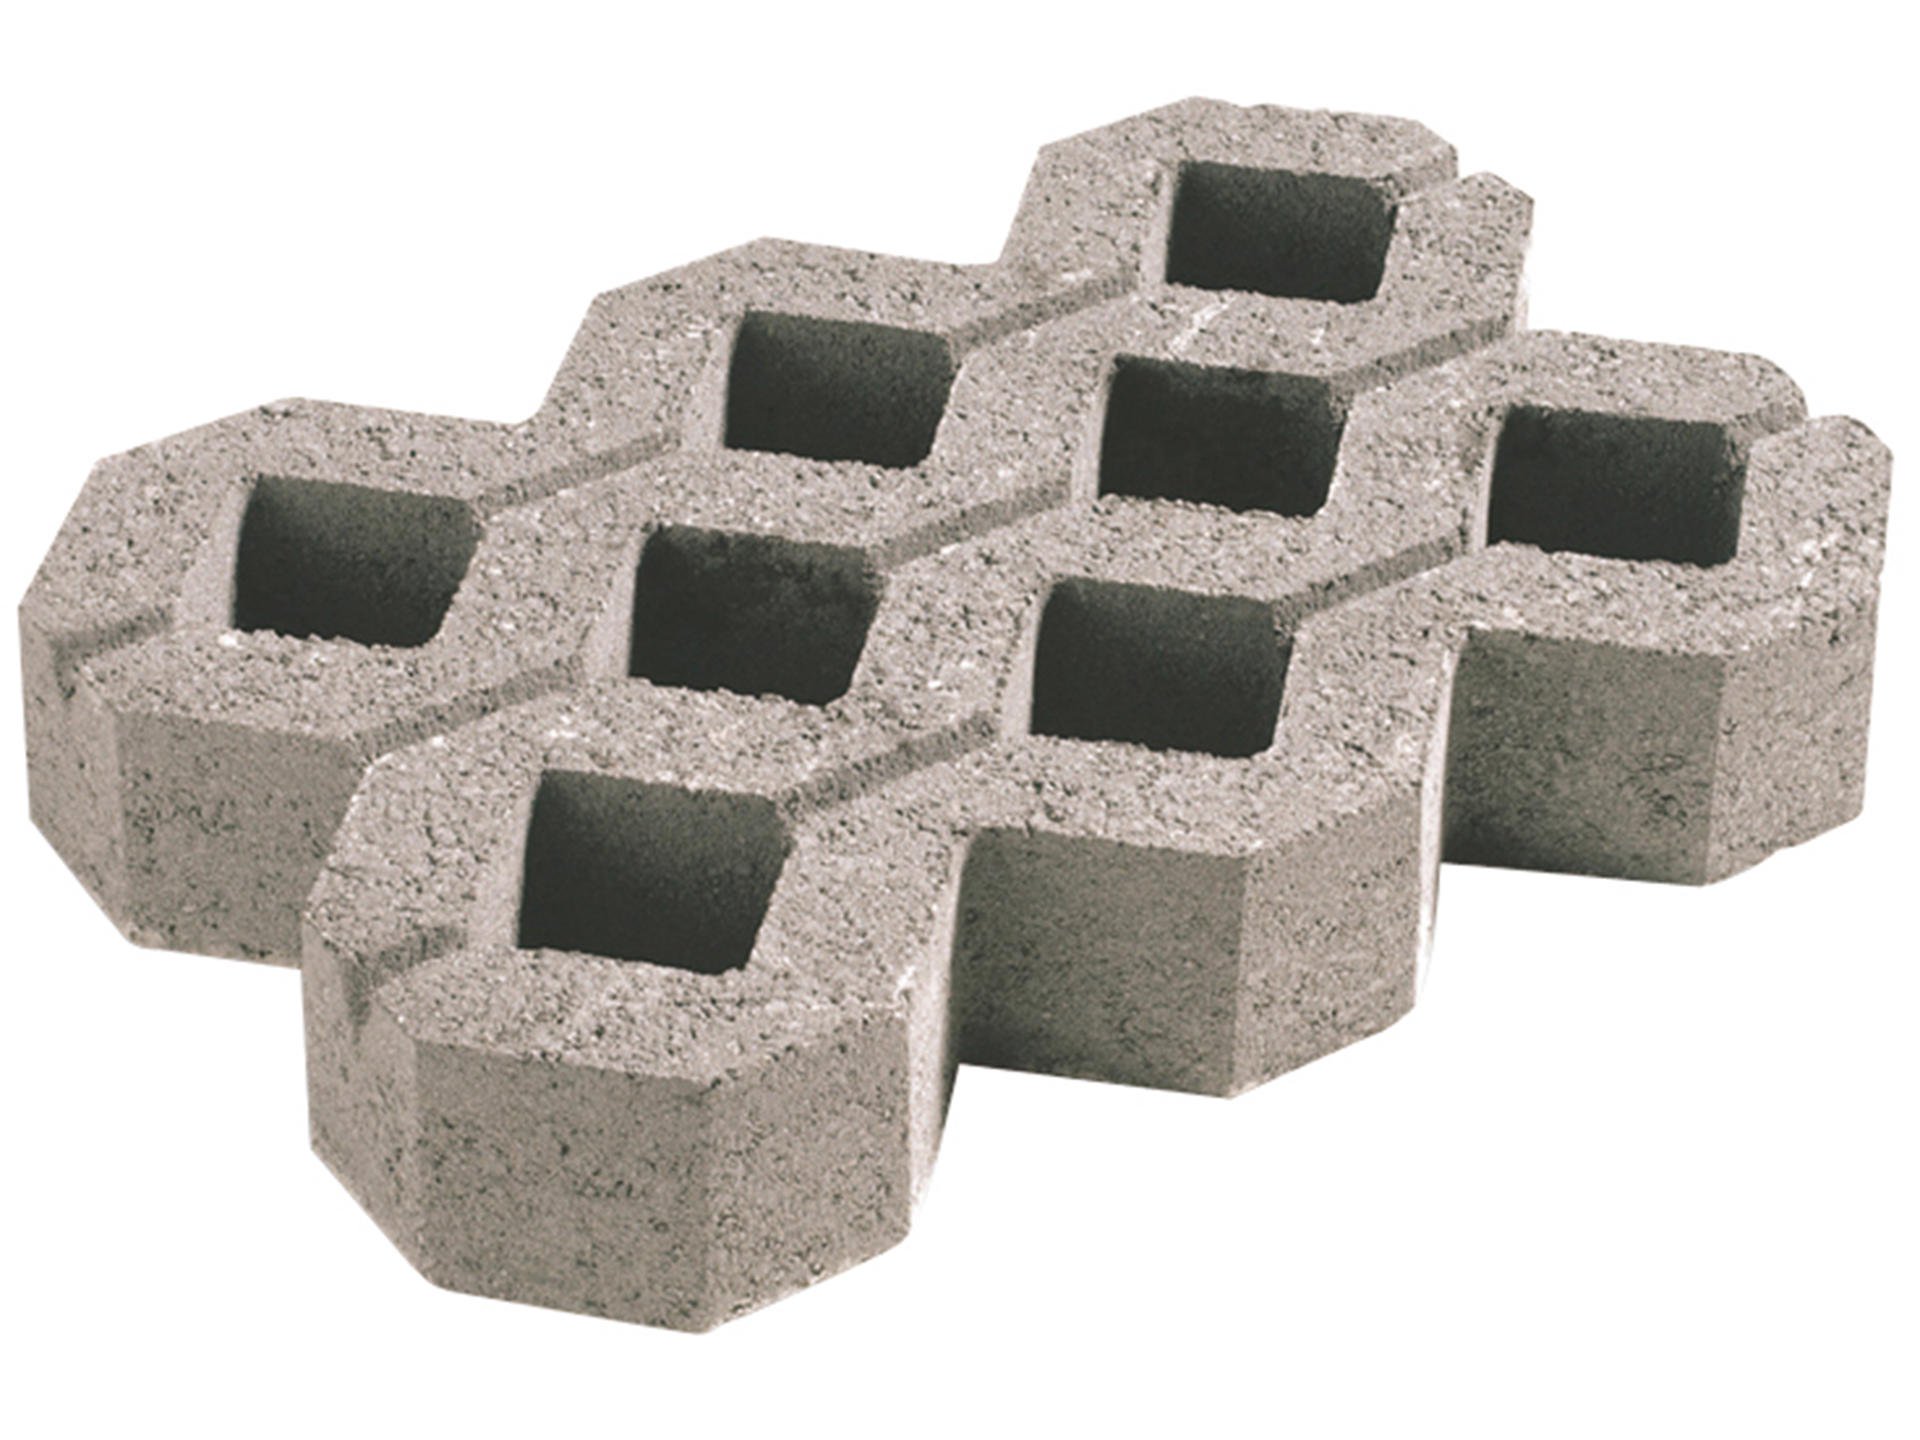 GRASDAL - beton | dalle gazon